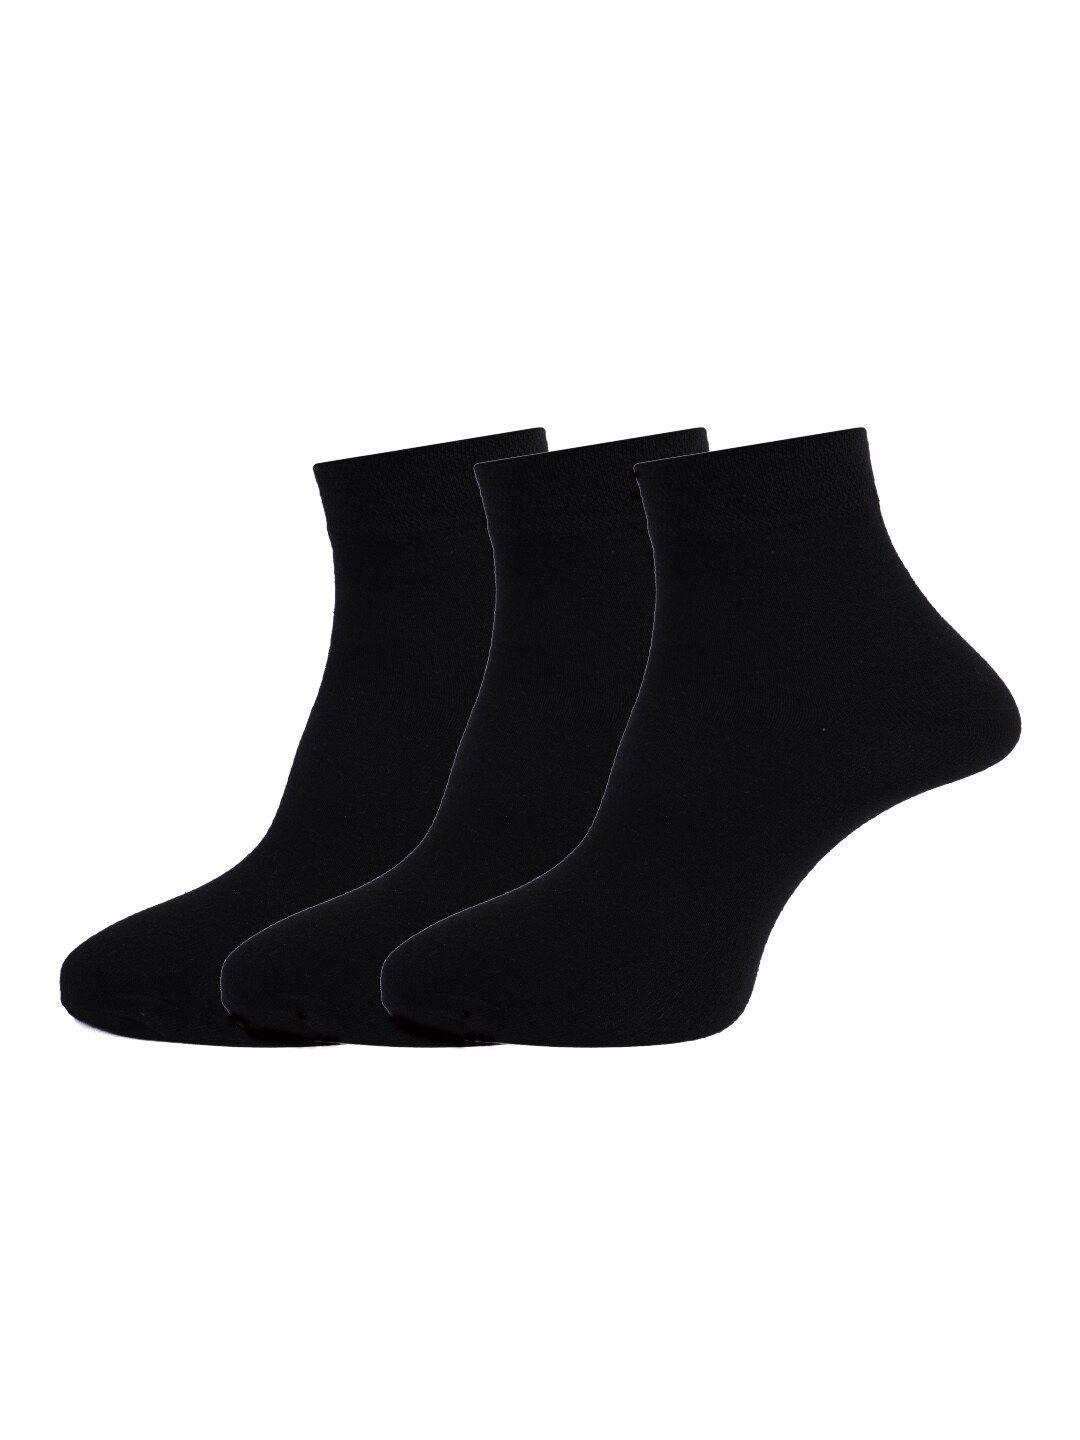 dollar socks men pack of 3 black solid cotton ankle length socks